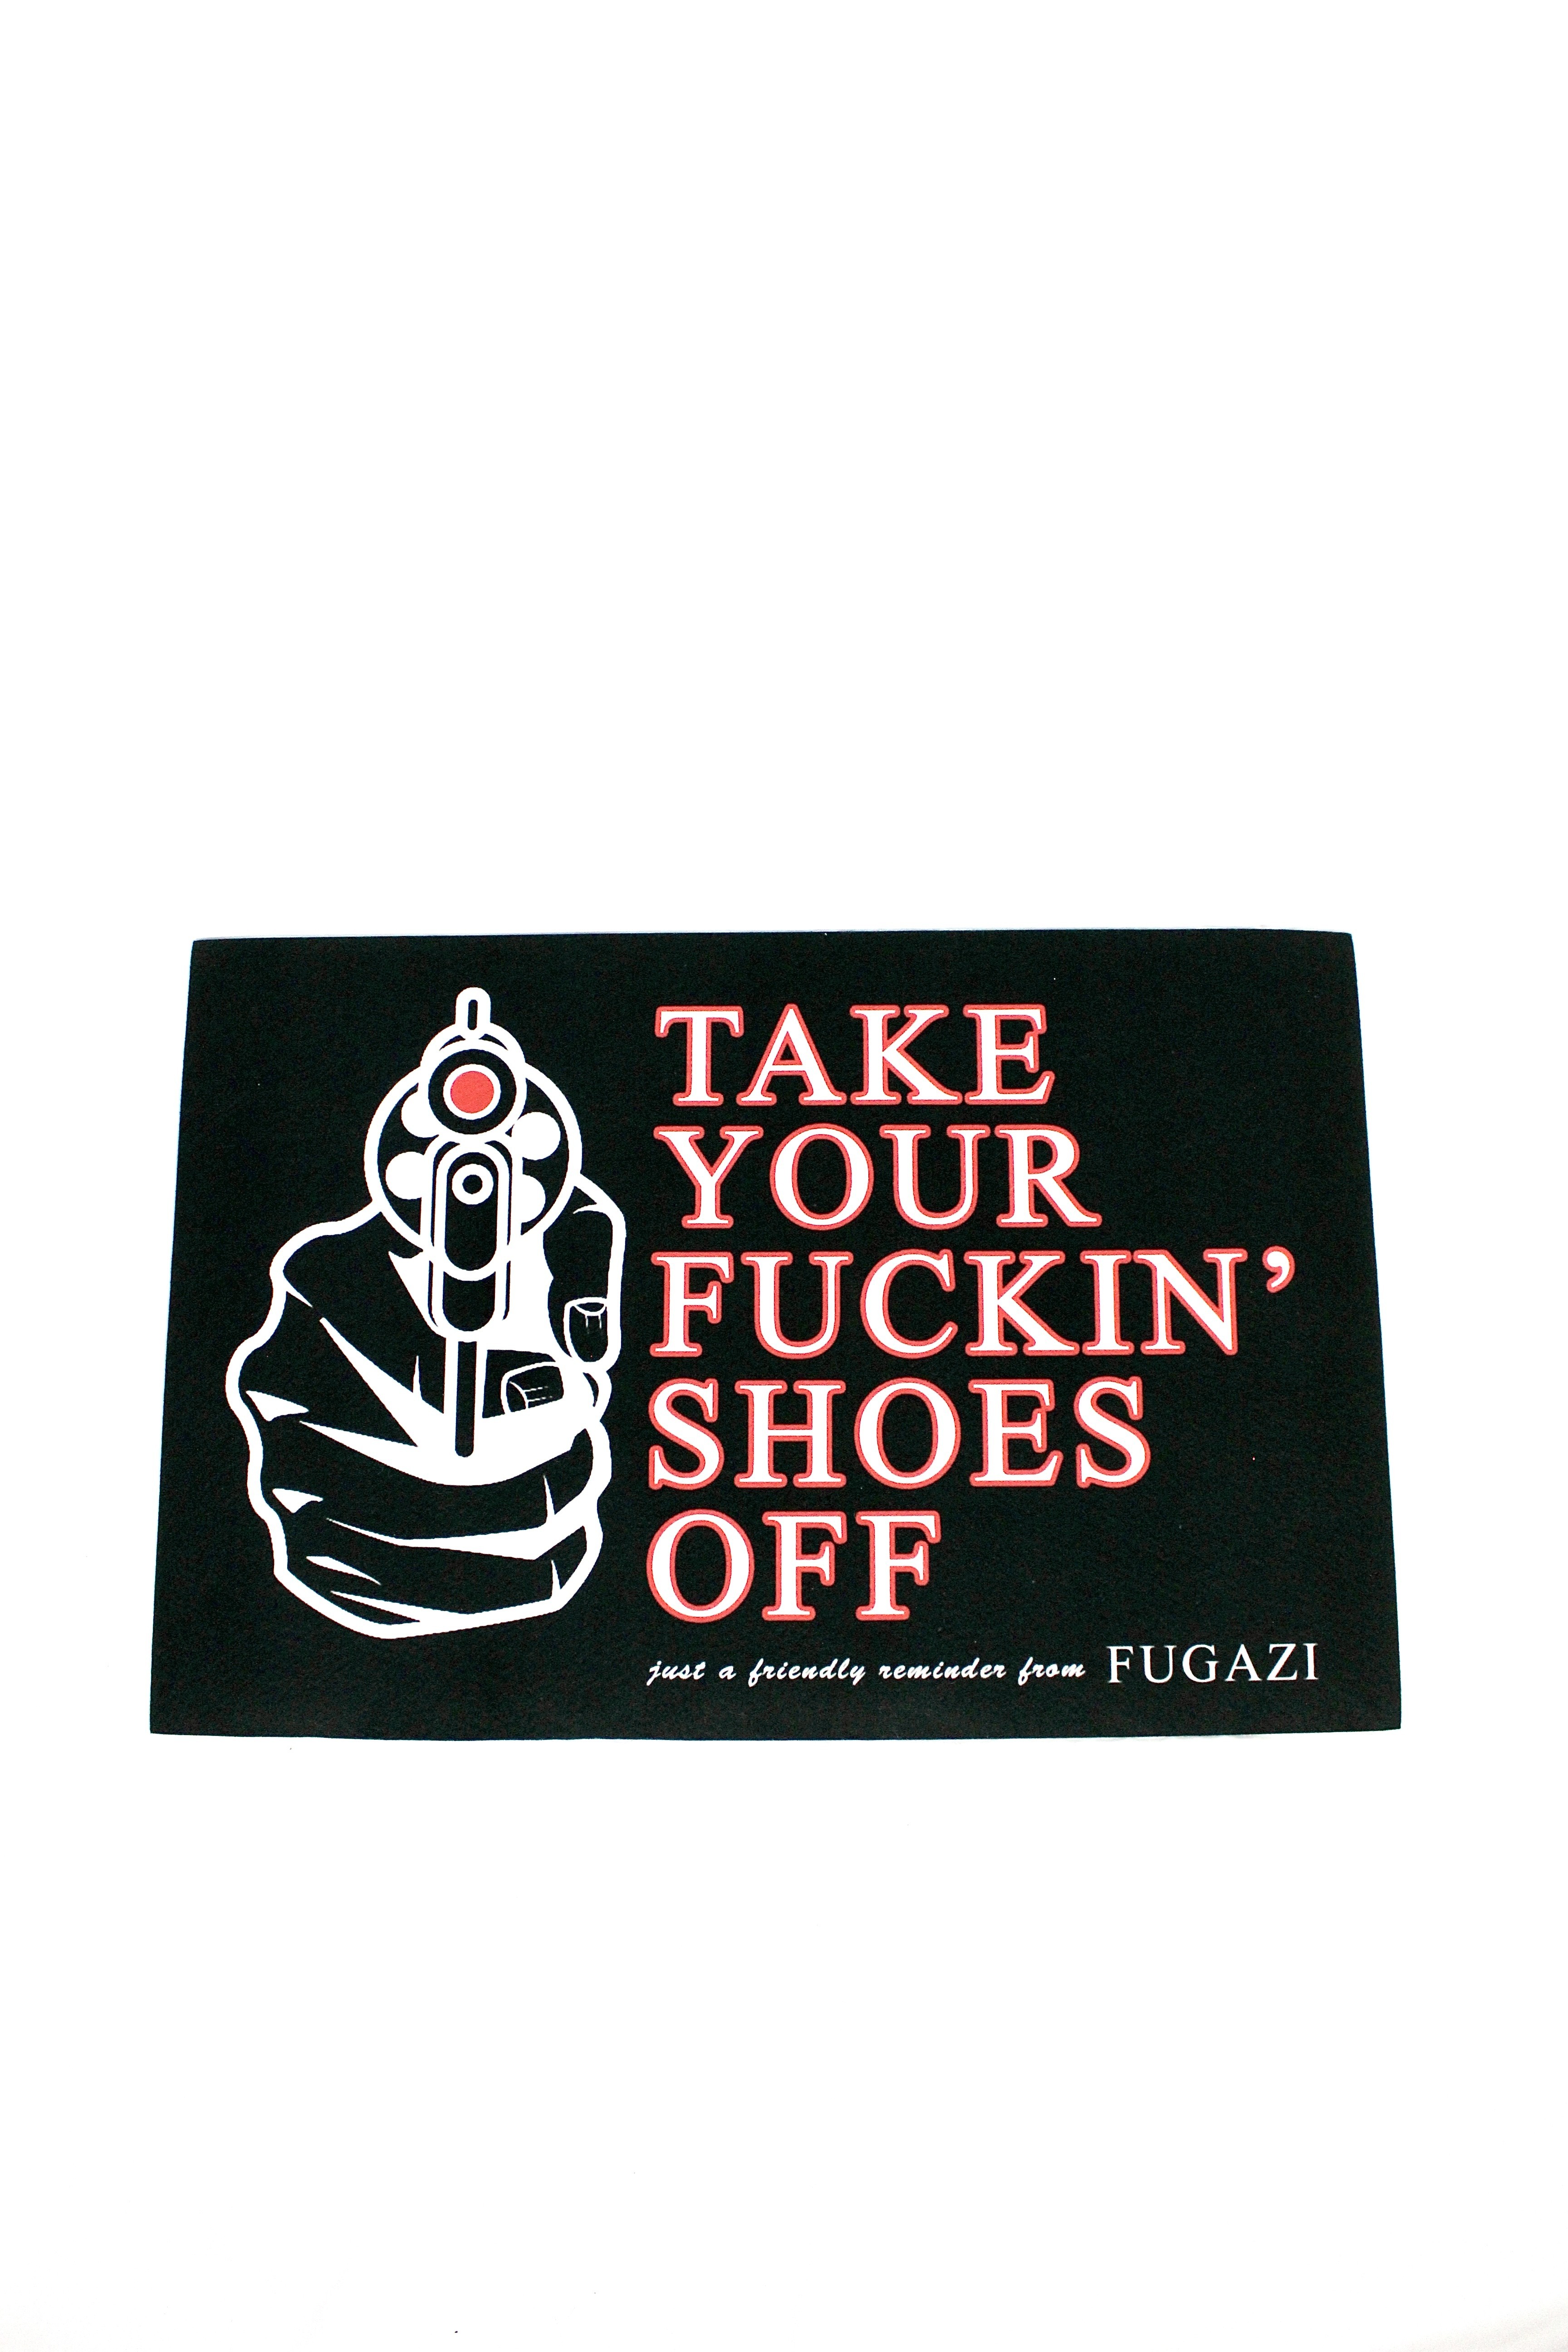 Fugazi TYFSO “Take Your Fuckin’ Shoes Off” Doormat - 2